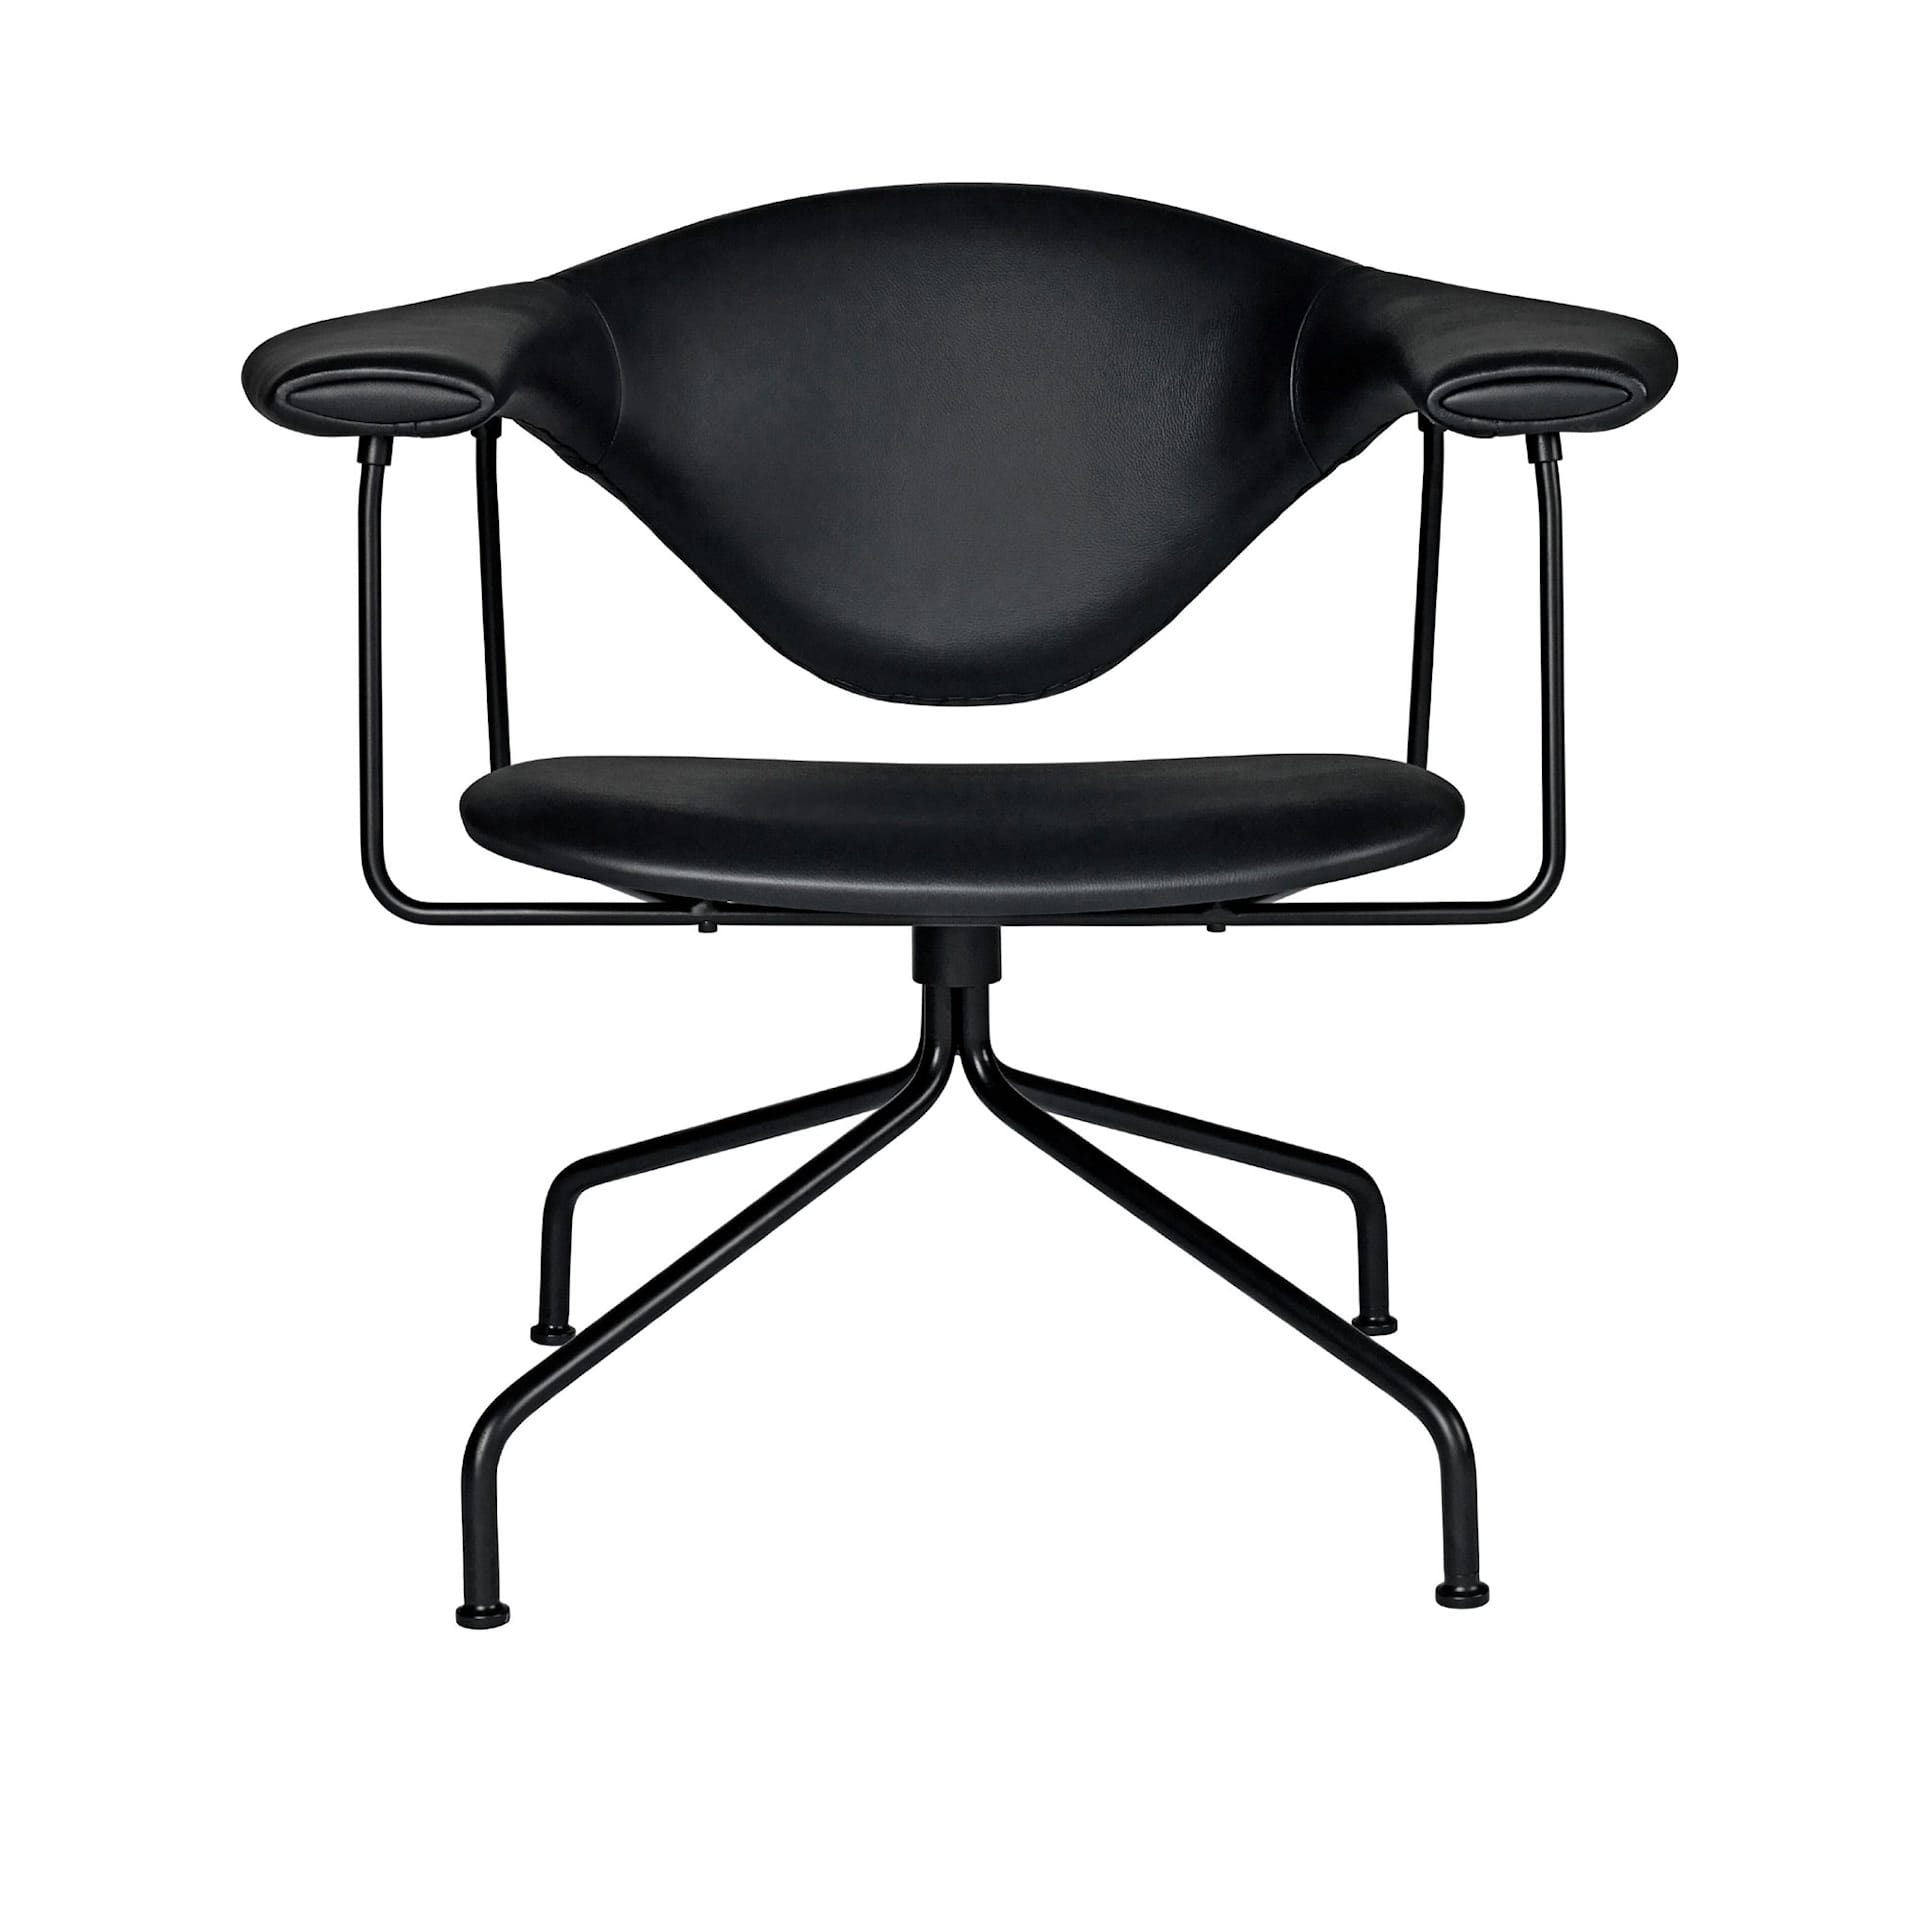 Masculo Lounge Chair Swivel Base - Gubi - GamFratesi - NO GA